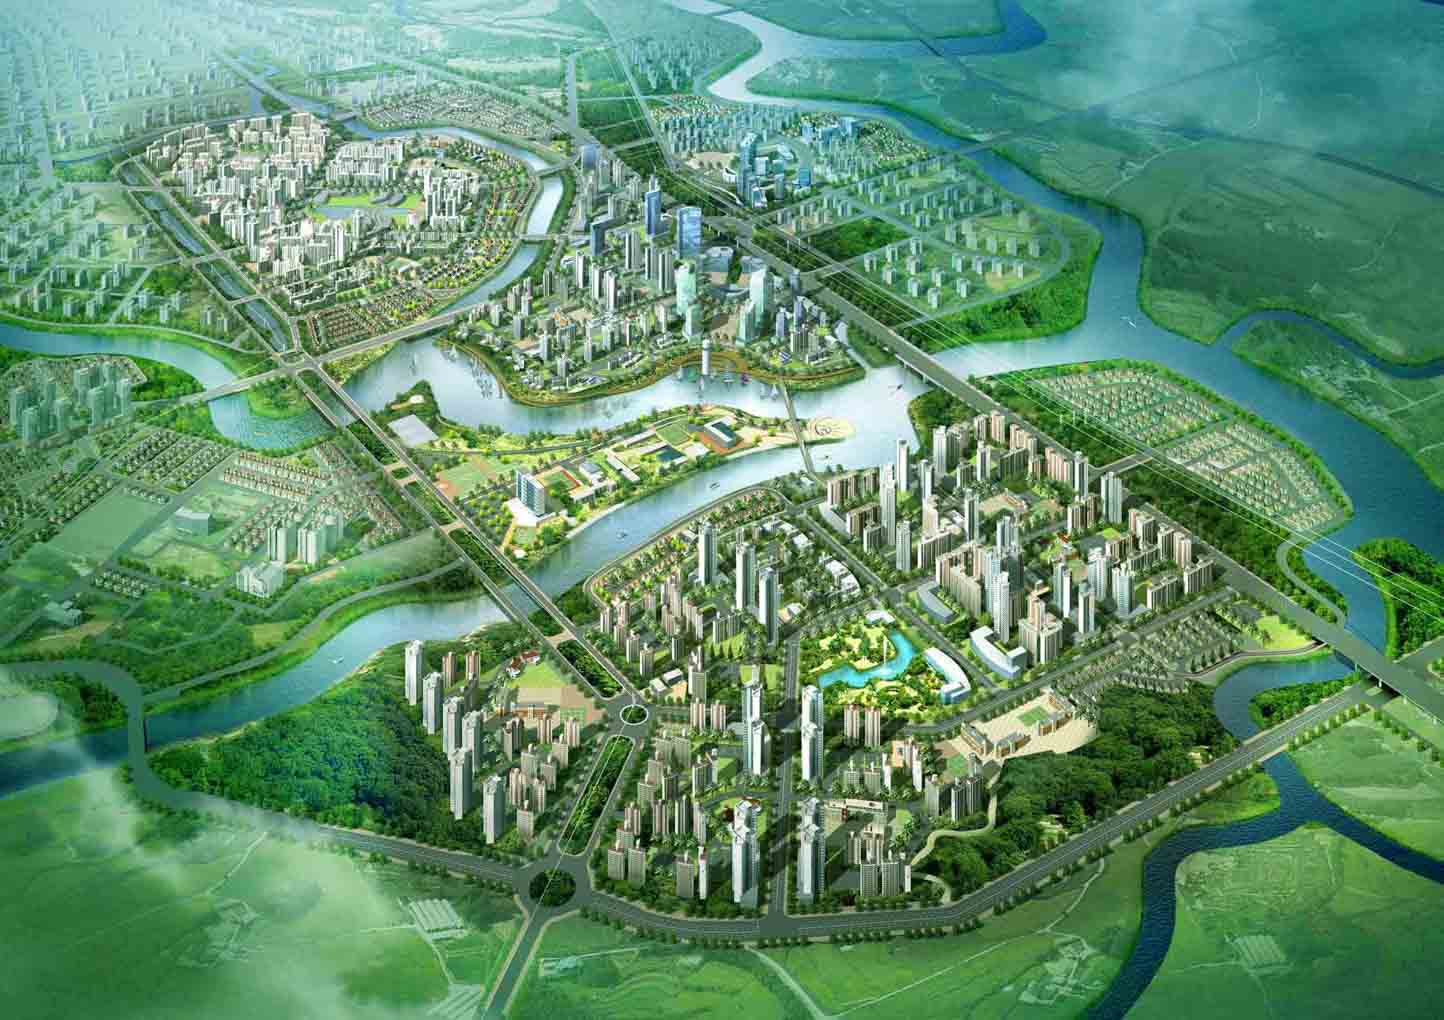 Zeitgeist City là một trong những dự án lớn mà các nhà đầu tư Hàn Quốc tận tâm xây dựng